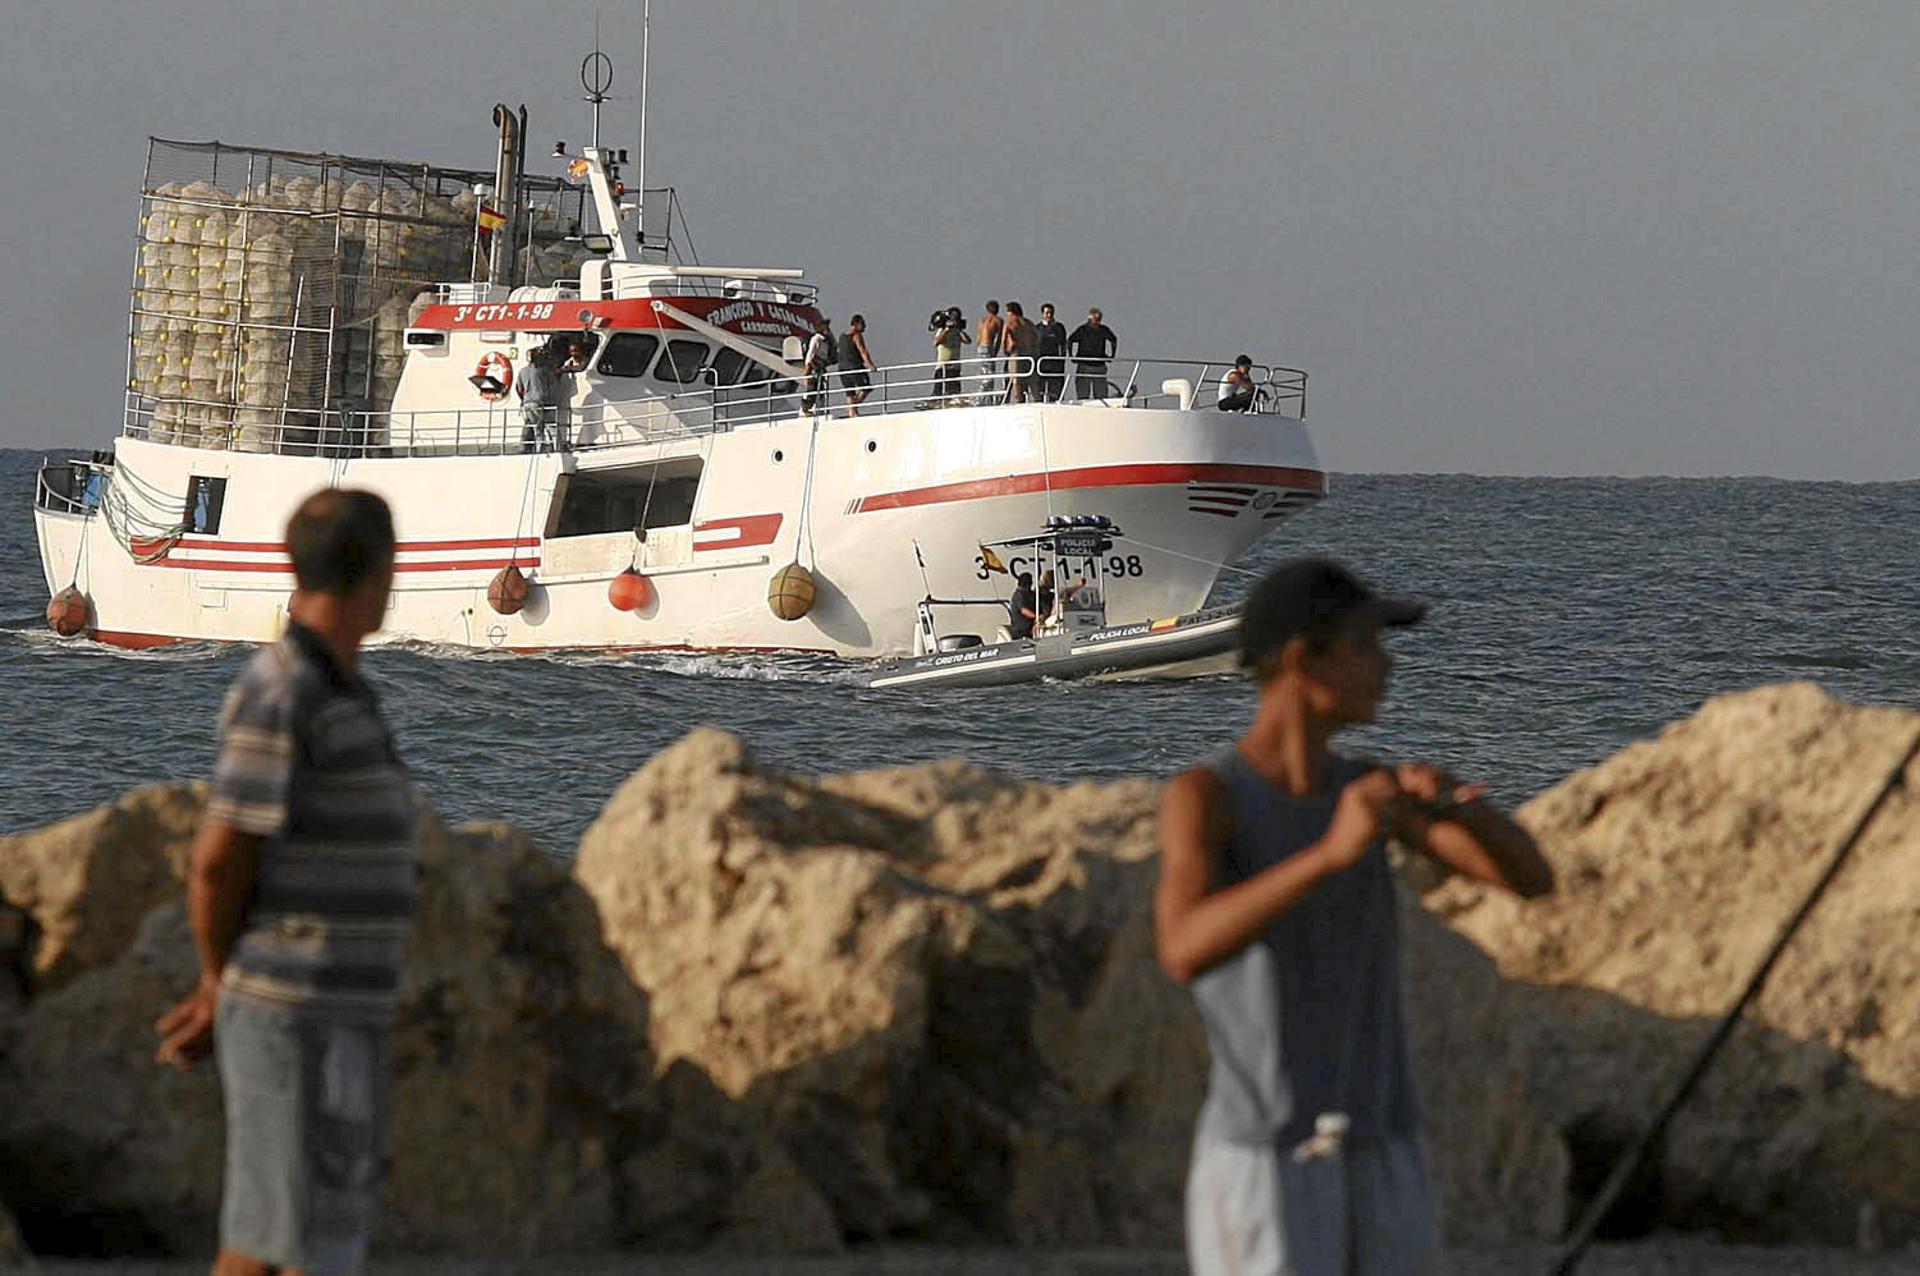 El pesquero "Francisco y Catalina" enfila el puerto de Santa Pola tras la odisea que sufrieron sus tripulantes tras rescatar a 51 inmigrantes en aguas de Malta. EFE/M. Lorenzo